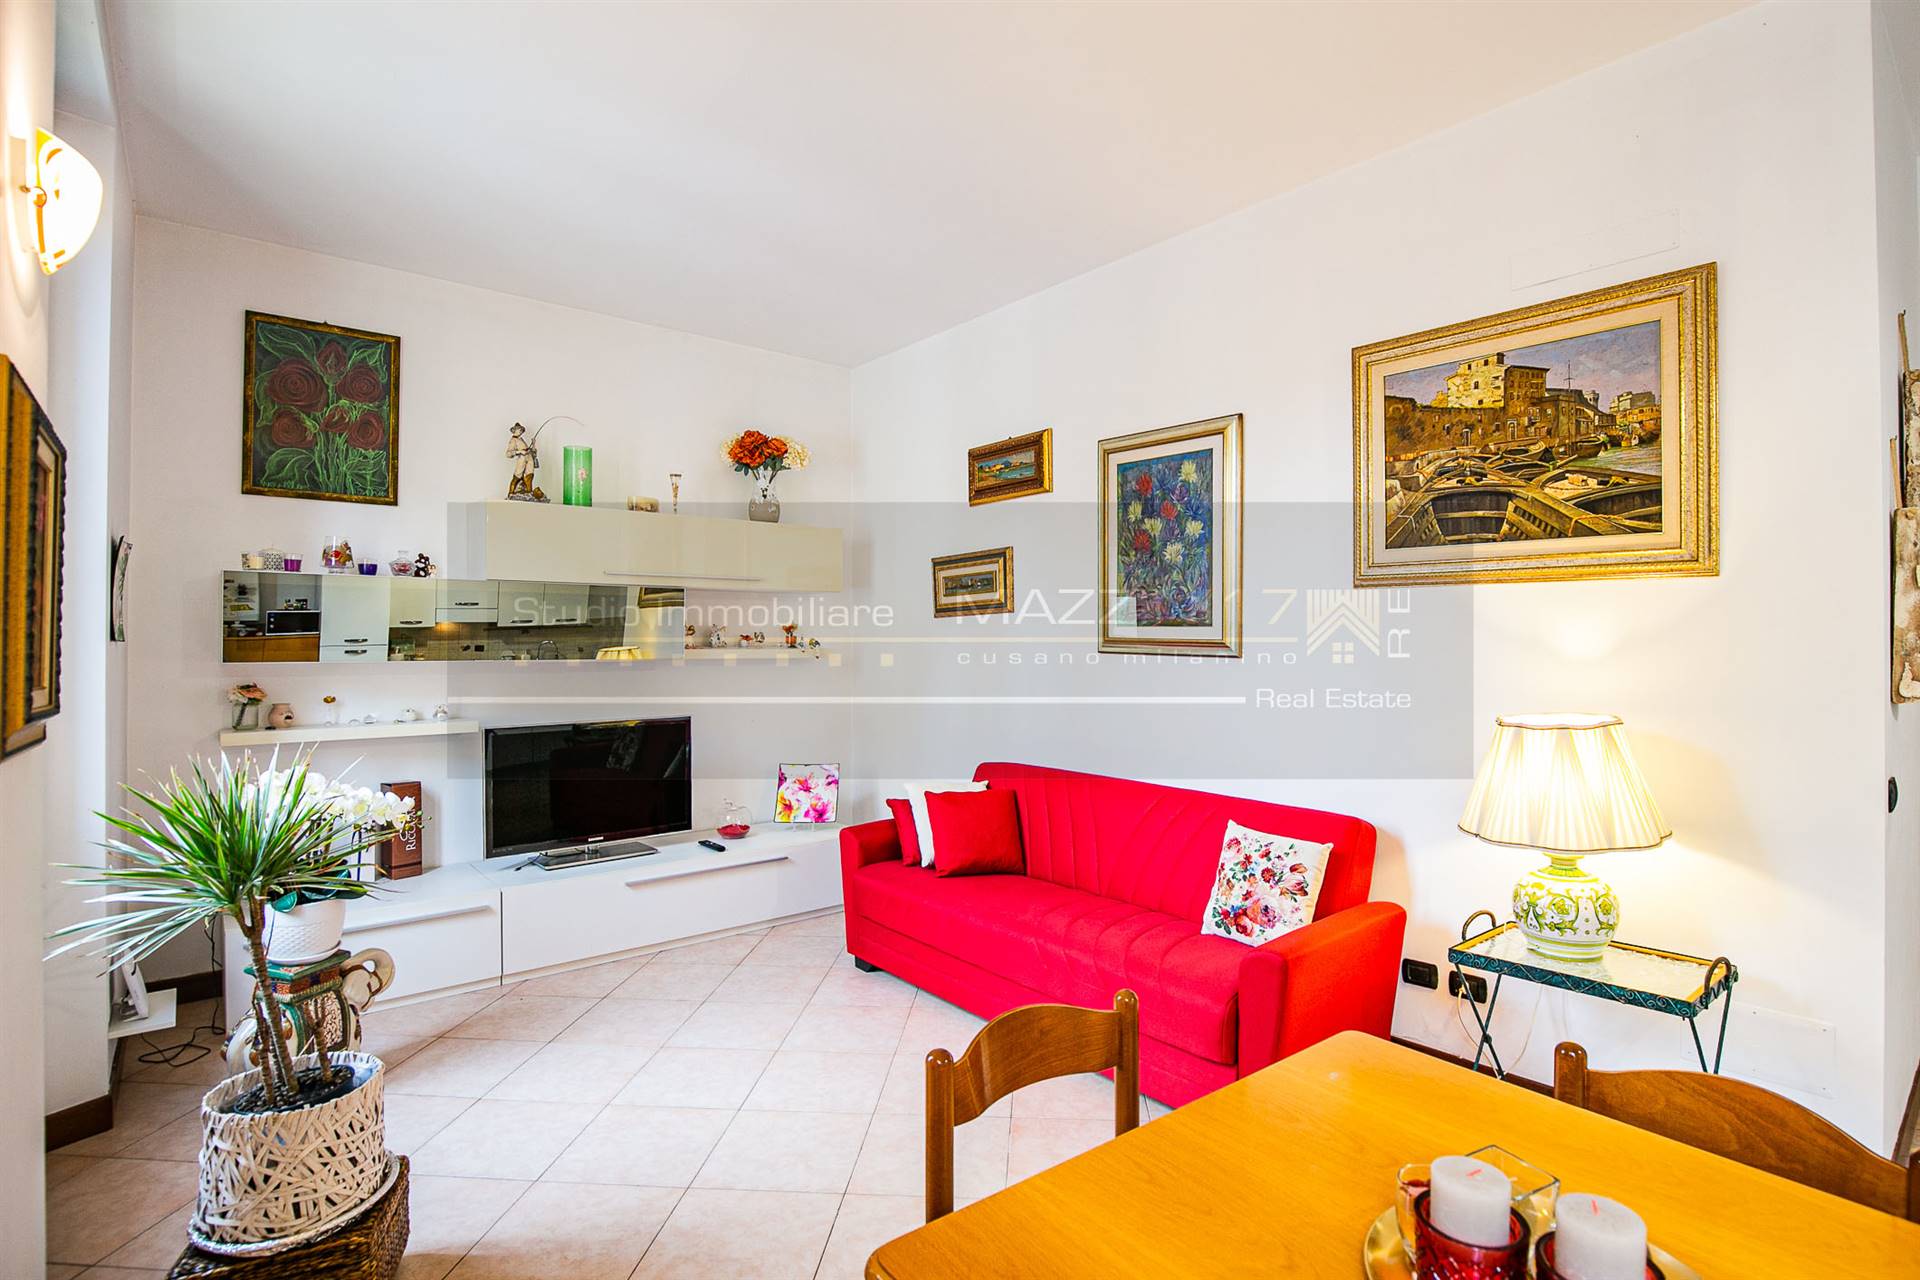 Appartamento in vendita a Cesano Maderno, 4 locali, prezzo € 120.000 | PortaleAgenzieImmobiliari.it